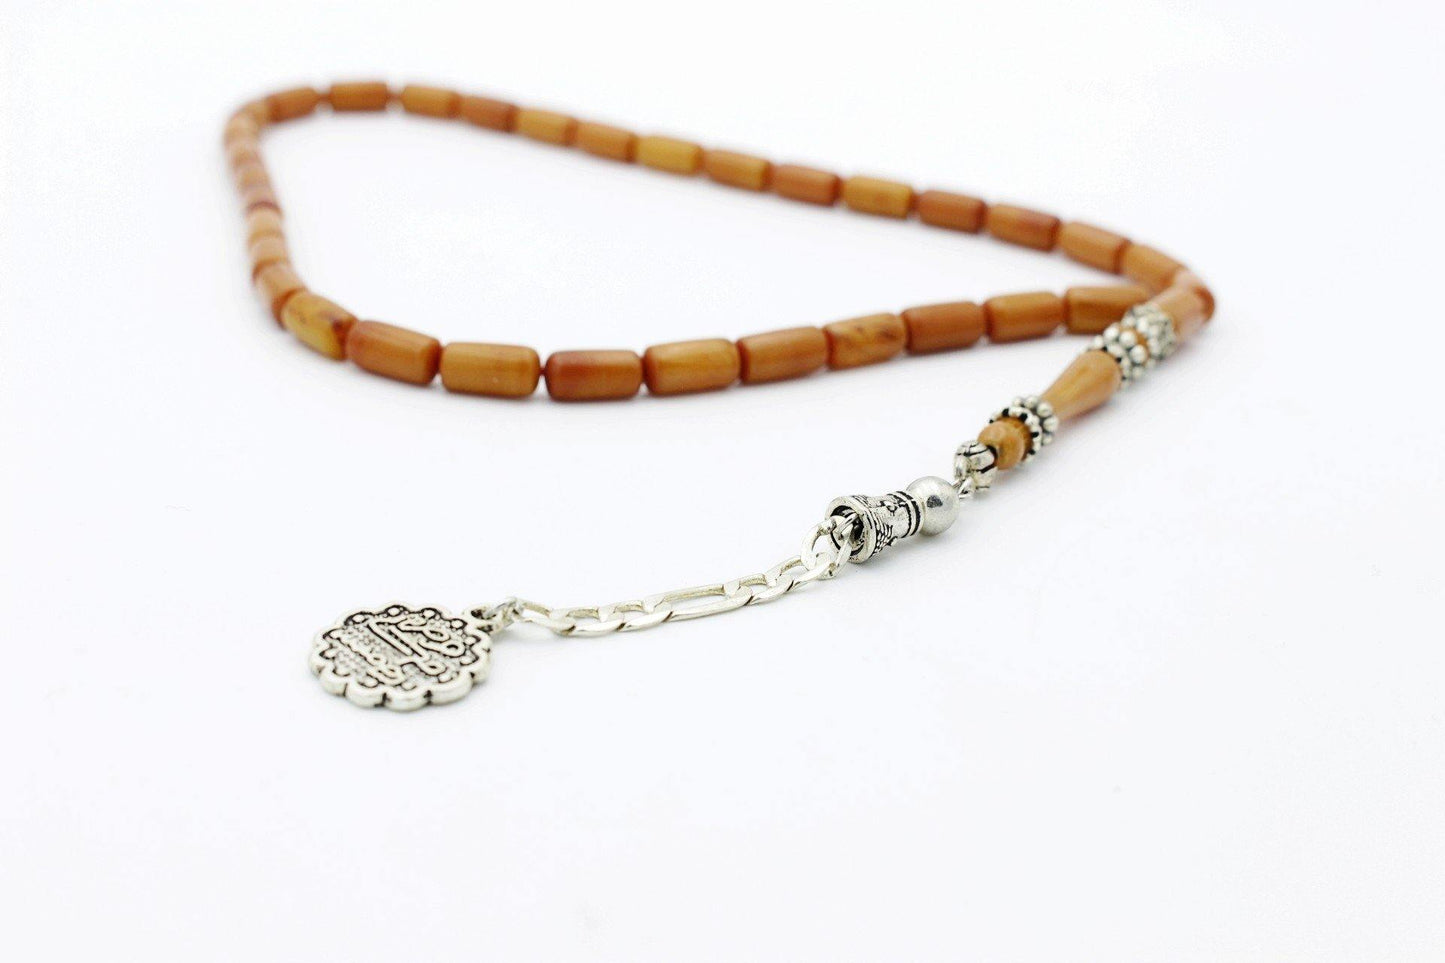 islamic beads gemstones for sale in uk prayer tasbih